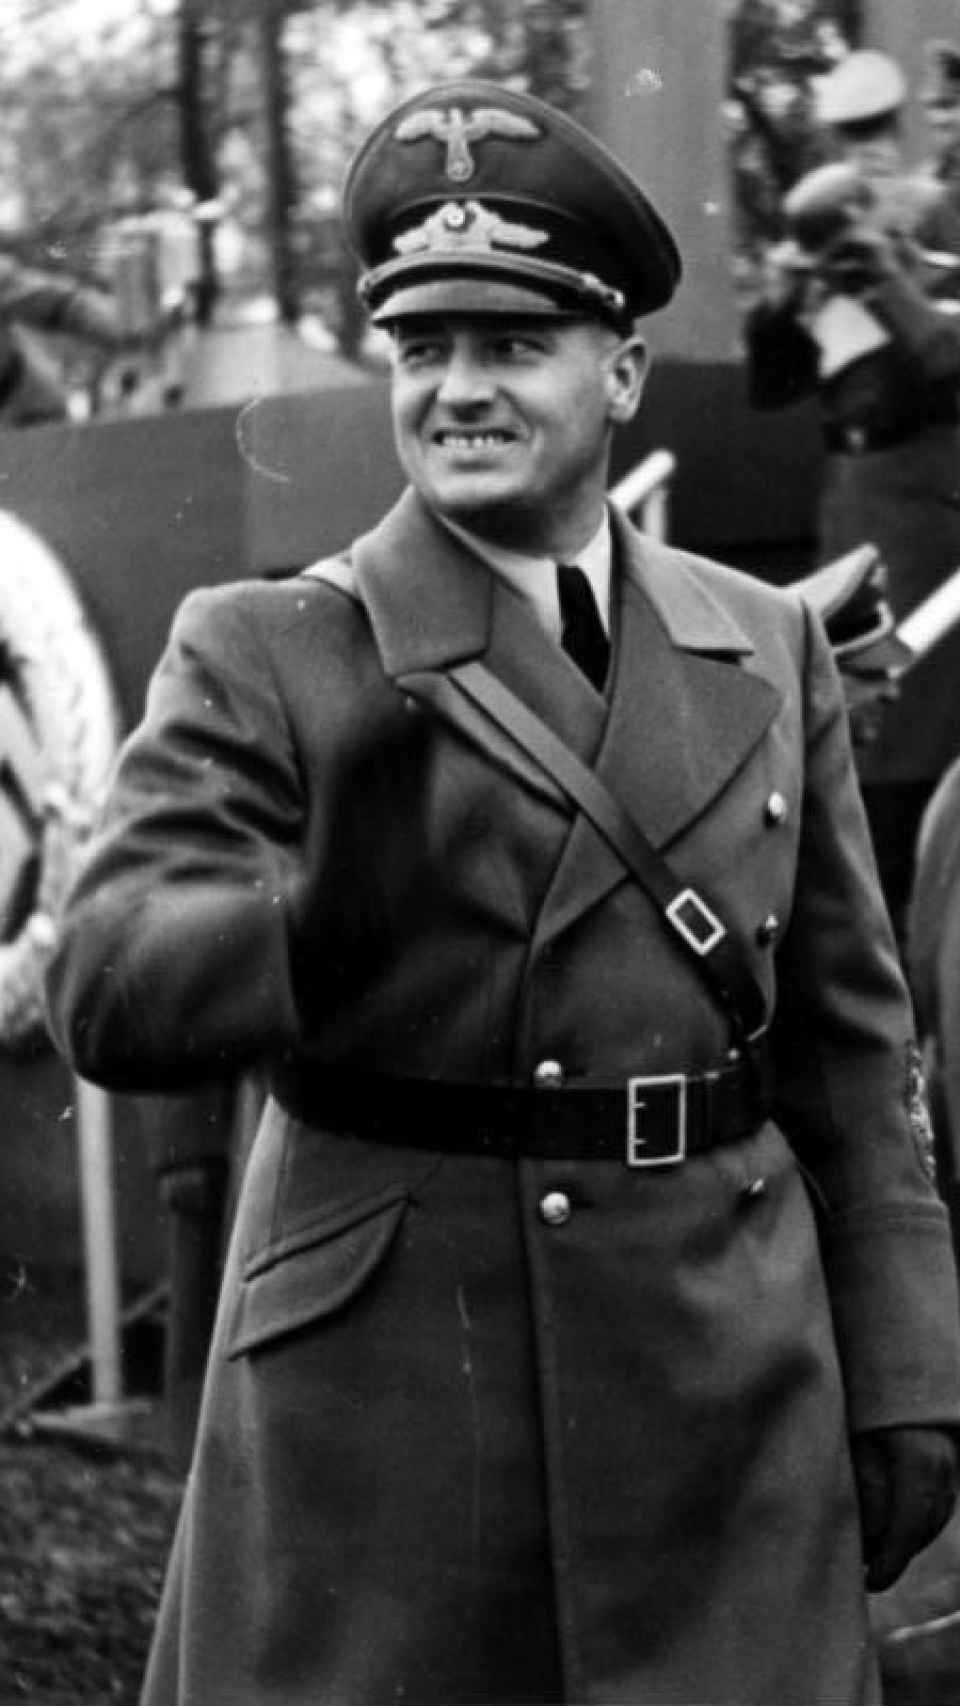 El gobernador de Polonia bajo el nazismo, Frank Hans, padre de Niklas